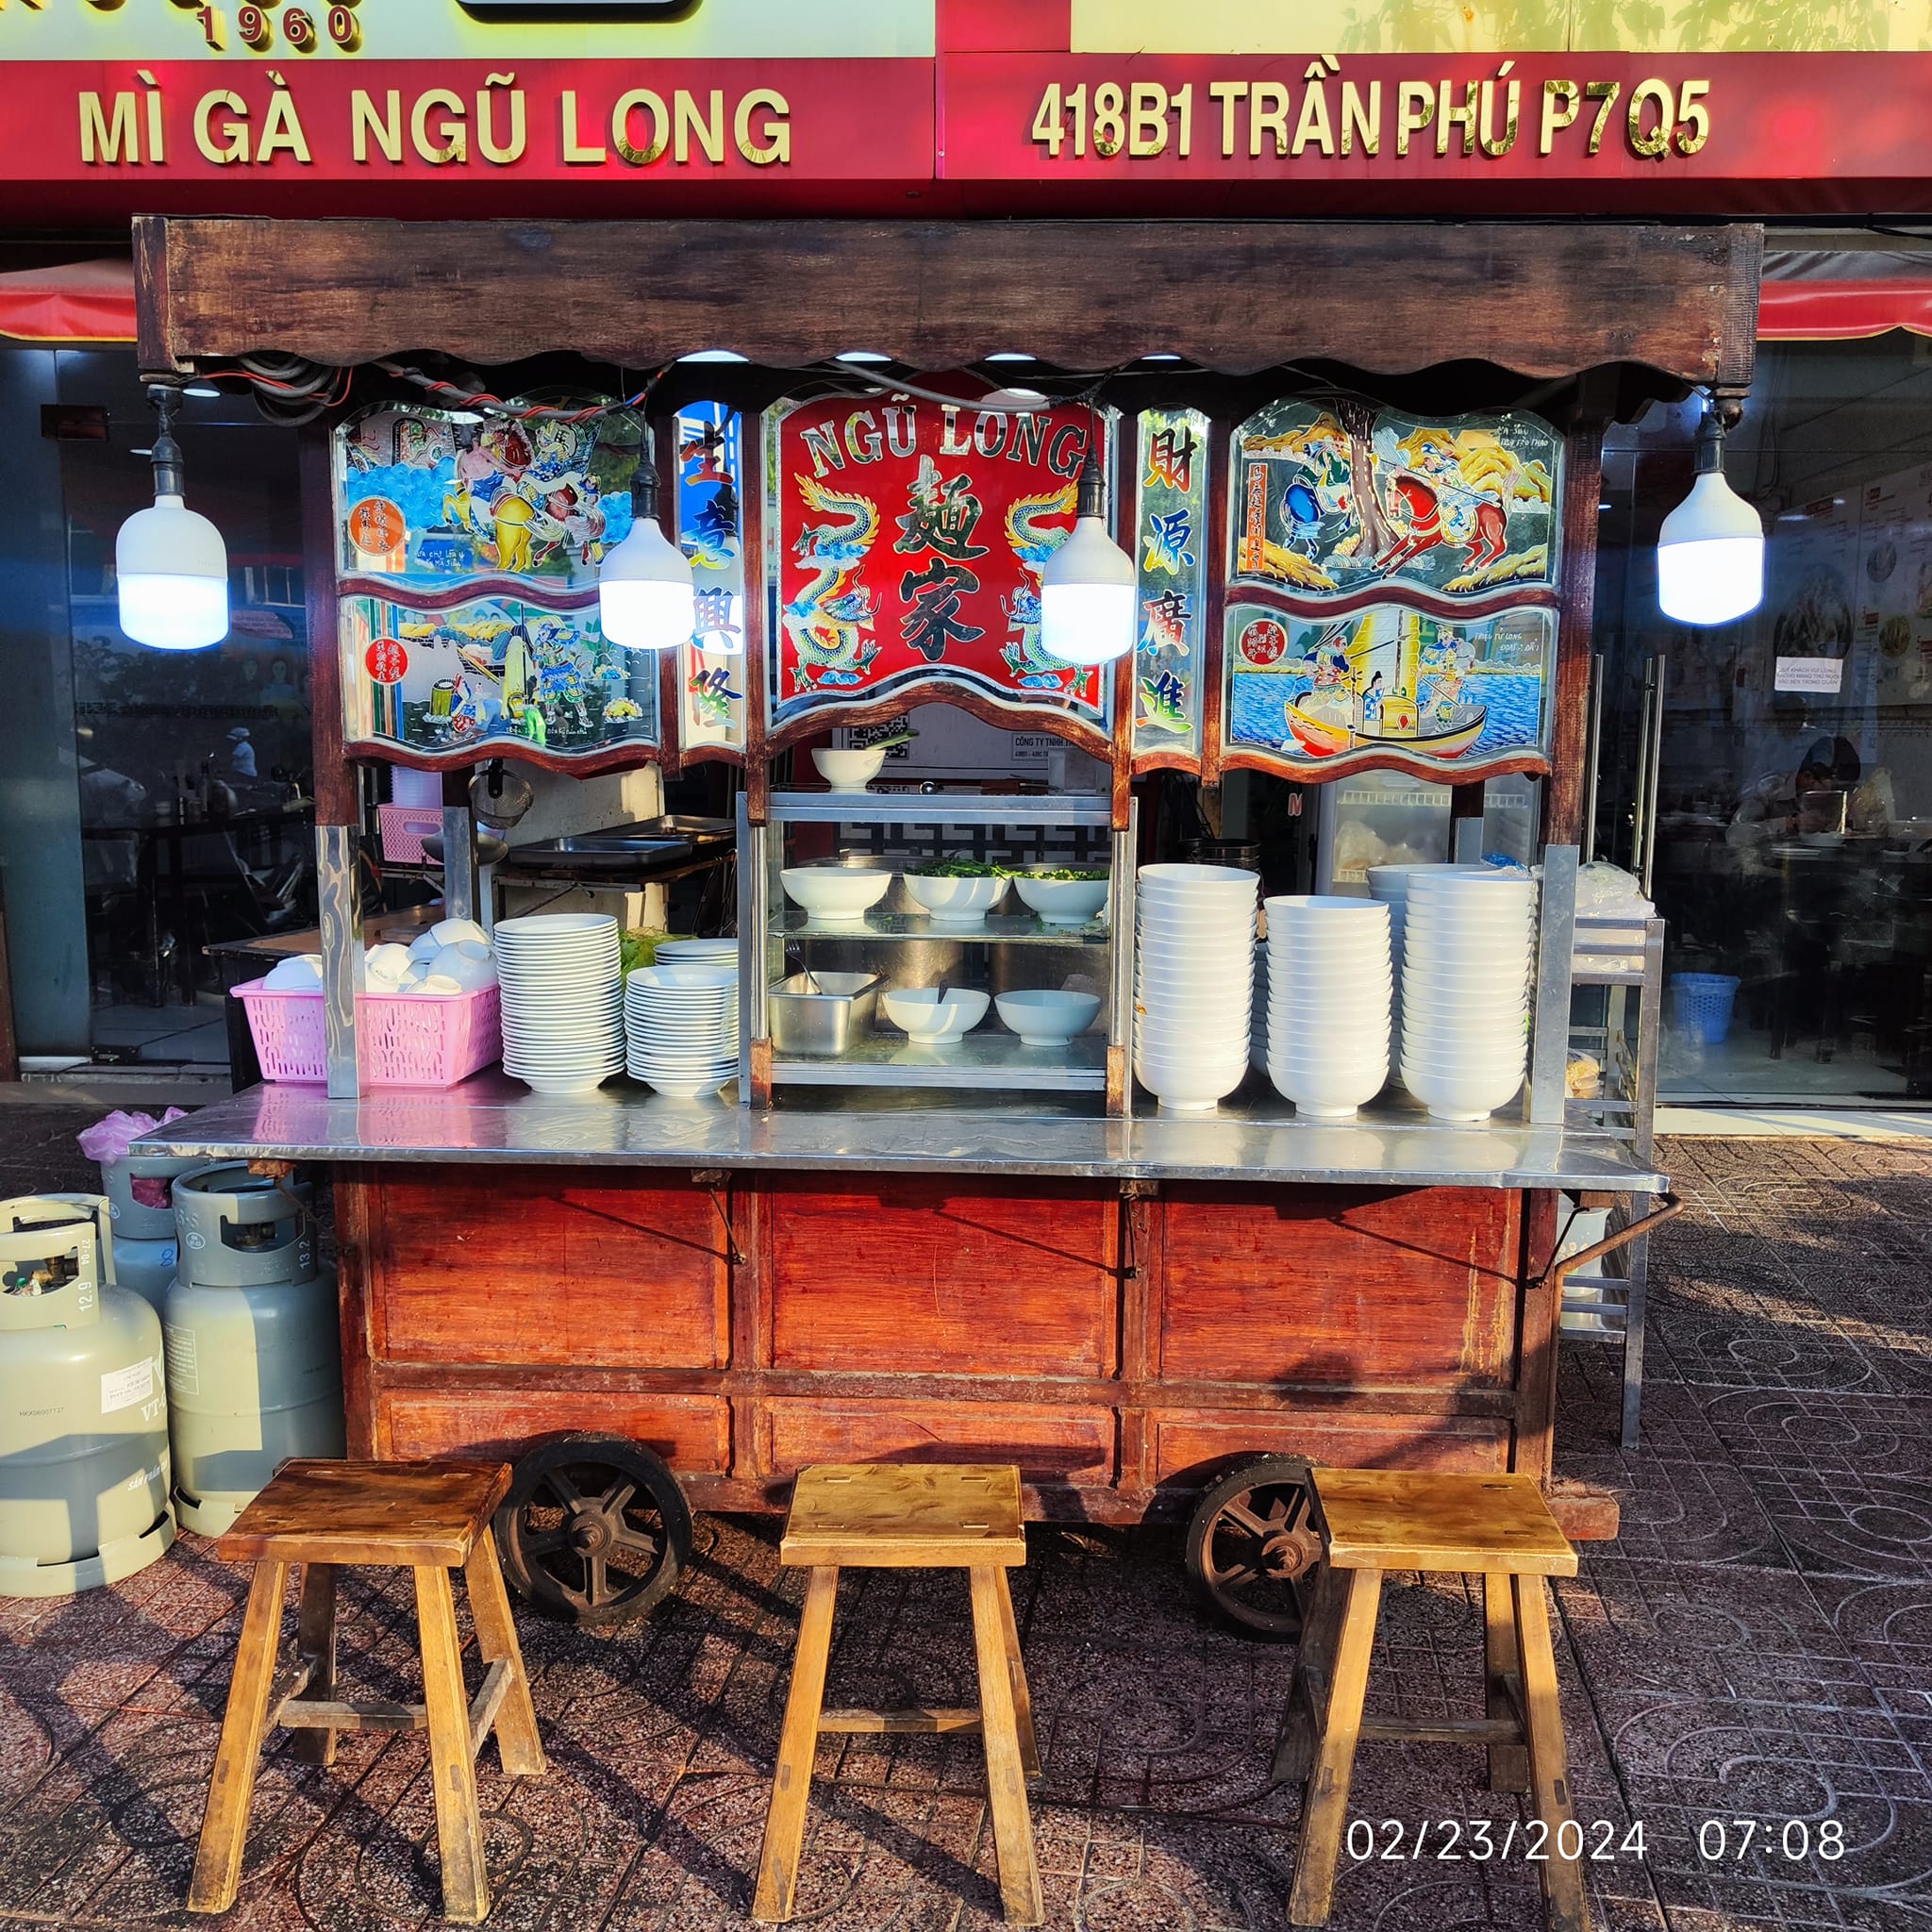 Mì Gà Ngũ Long được trang trí đậm chất Trung Hoa, nổi tiếng trên phố Trần Phú, Q5, TP HCM